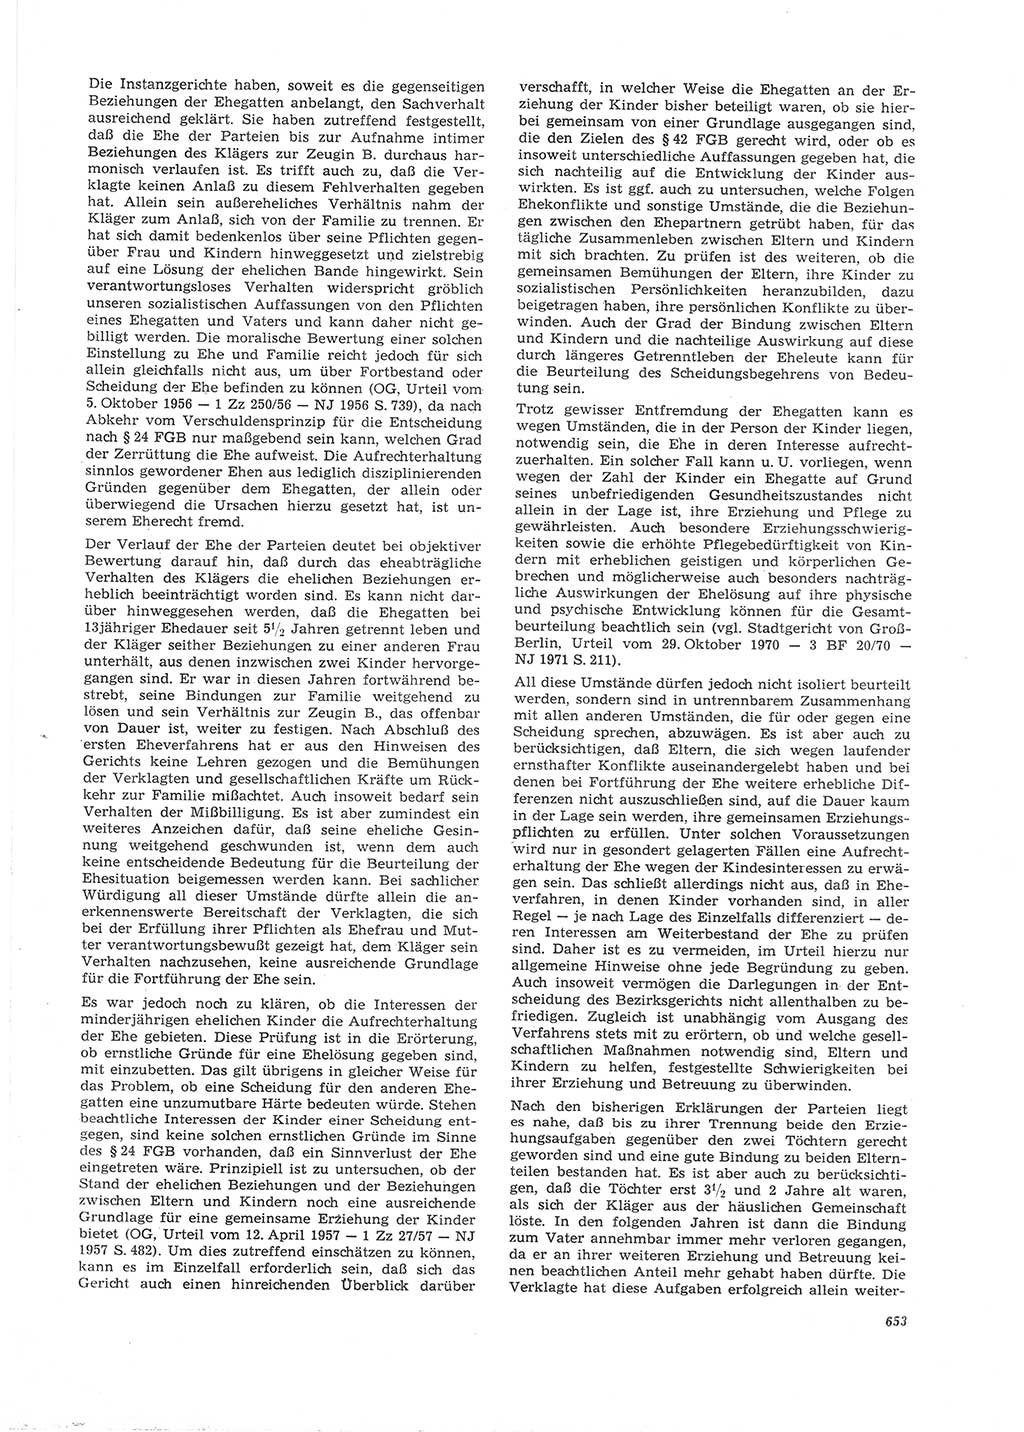 Neue Justiz (NJ), Zeitschrift für Recht und Rechtswissenschaft [Deutsche Demokratische Republik (DDR)], 26. Jahrgang 1972, Seite 653 (NJ DDR 1972, S. 653)